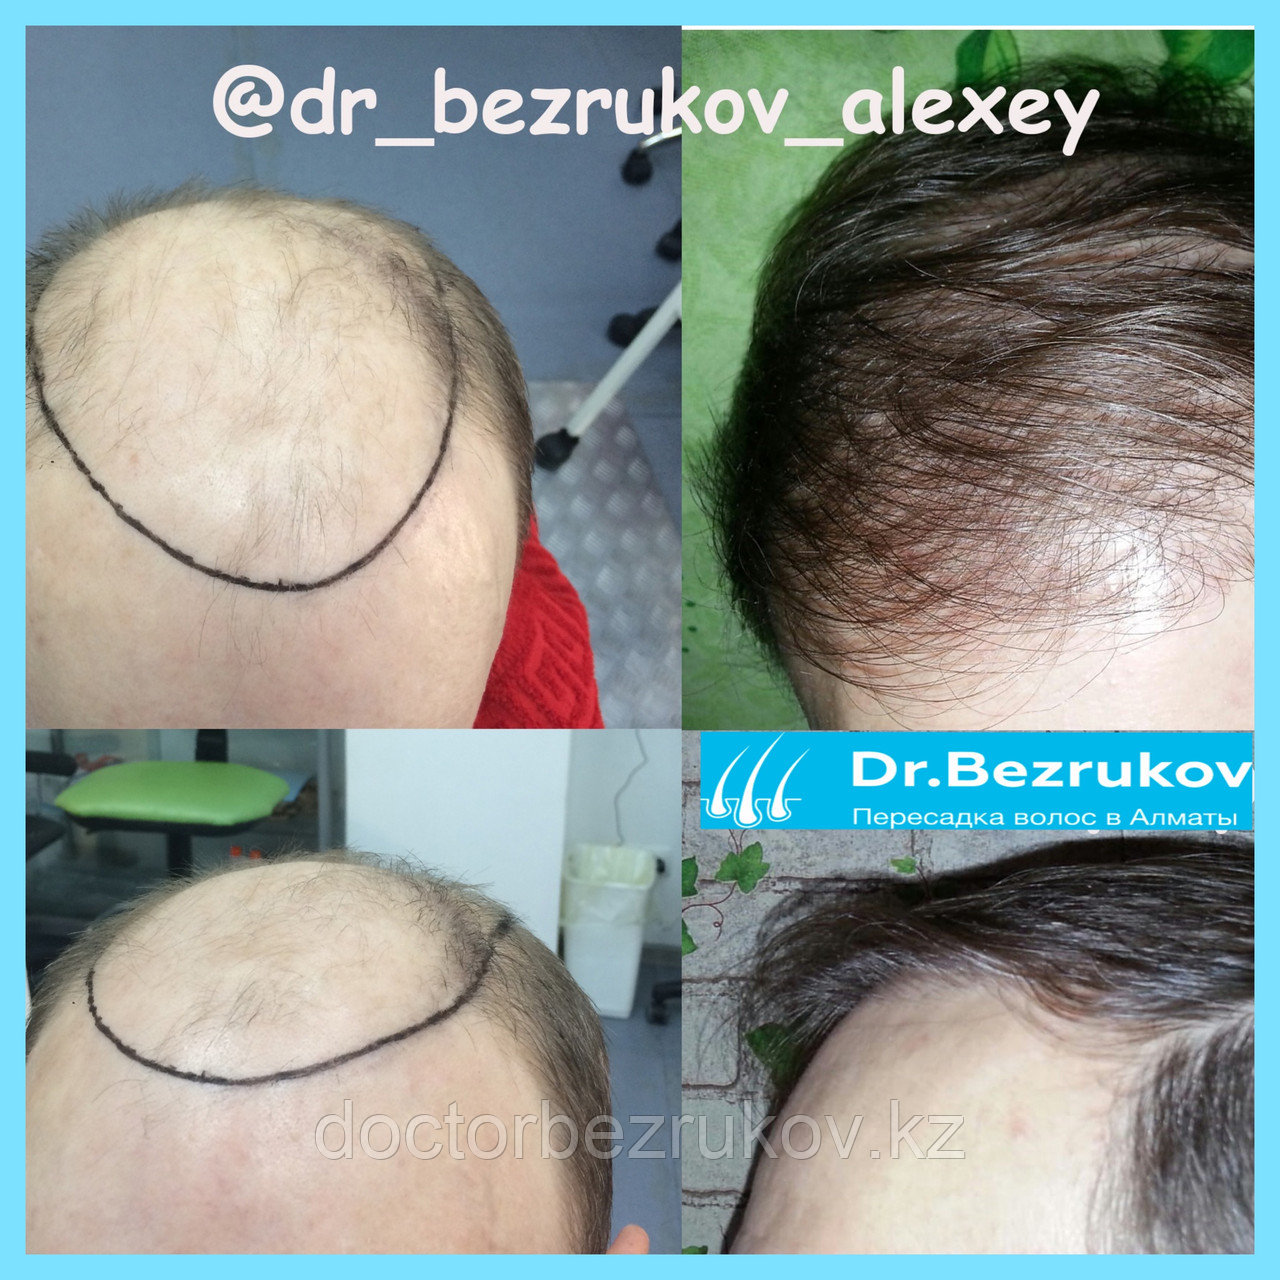 Безоперационная пересадка волос метод FUE в Алмате